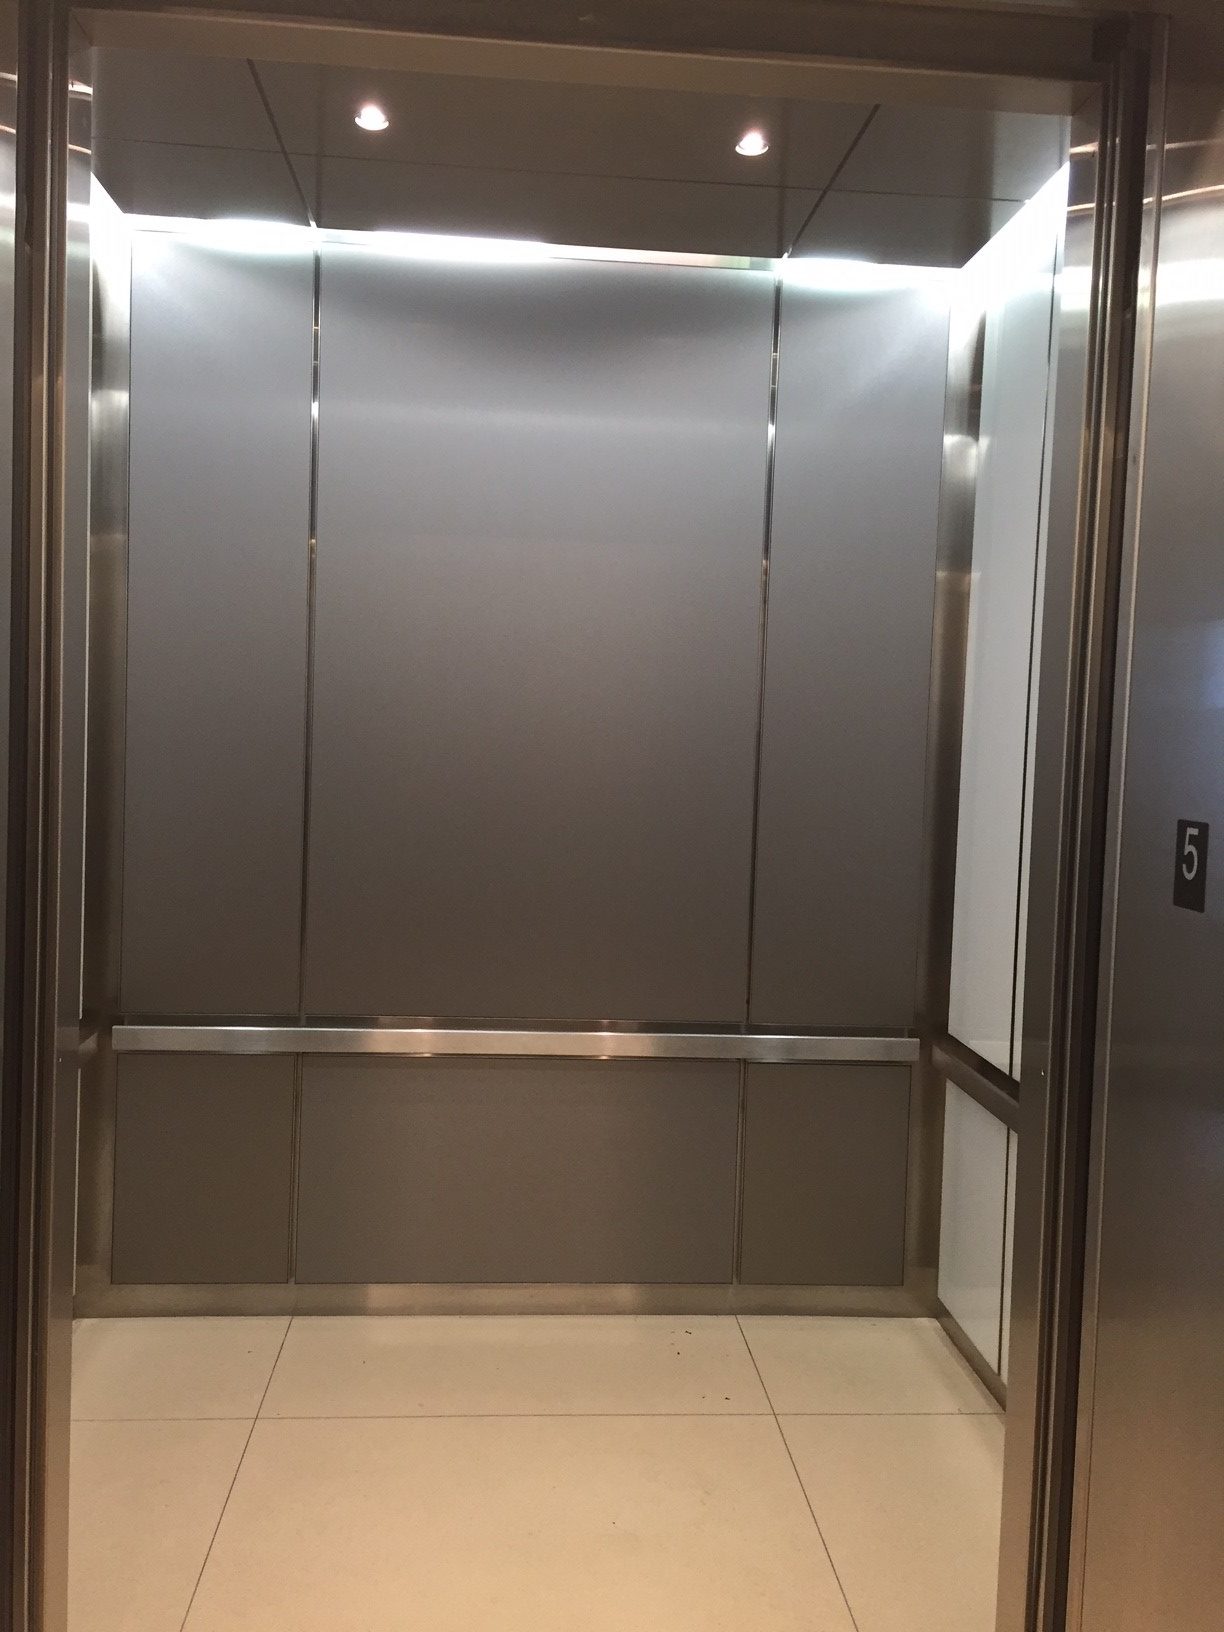 Empty elevator